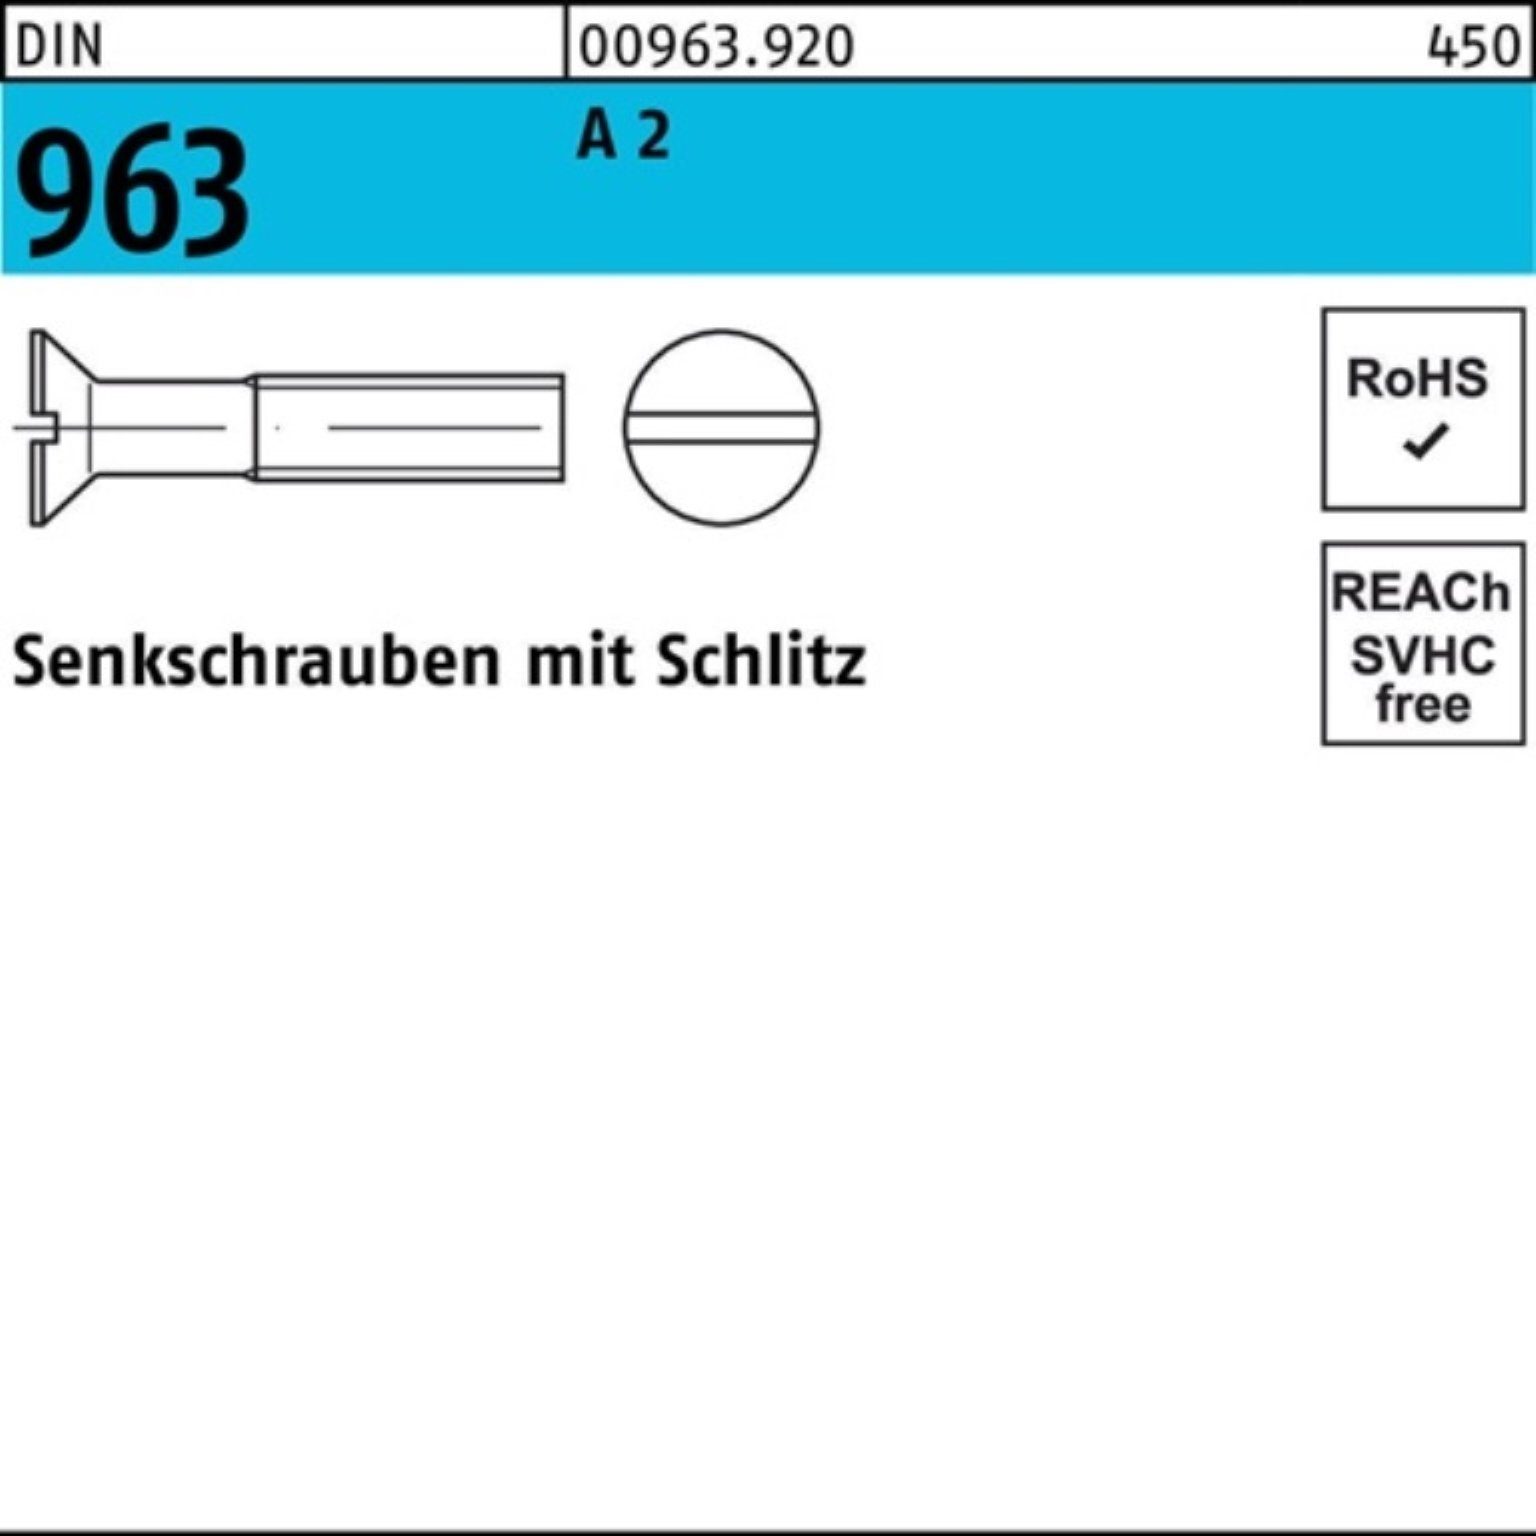 Reyher Senkschraube 100er 963 963 M6x Stück A 40 2 DIN Pack A Senkschraube Schlitz DIN 50